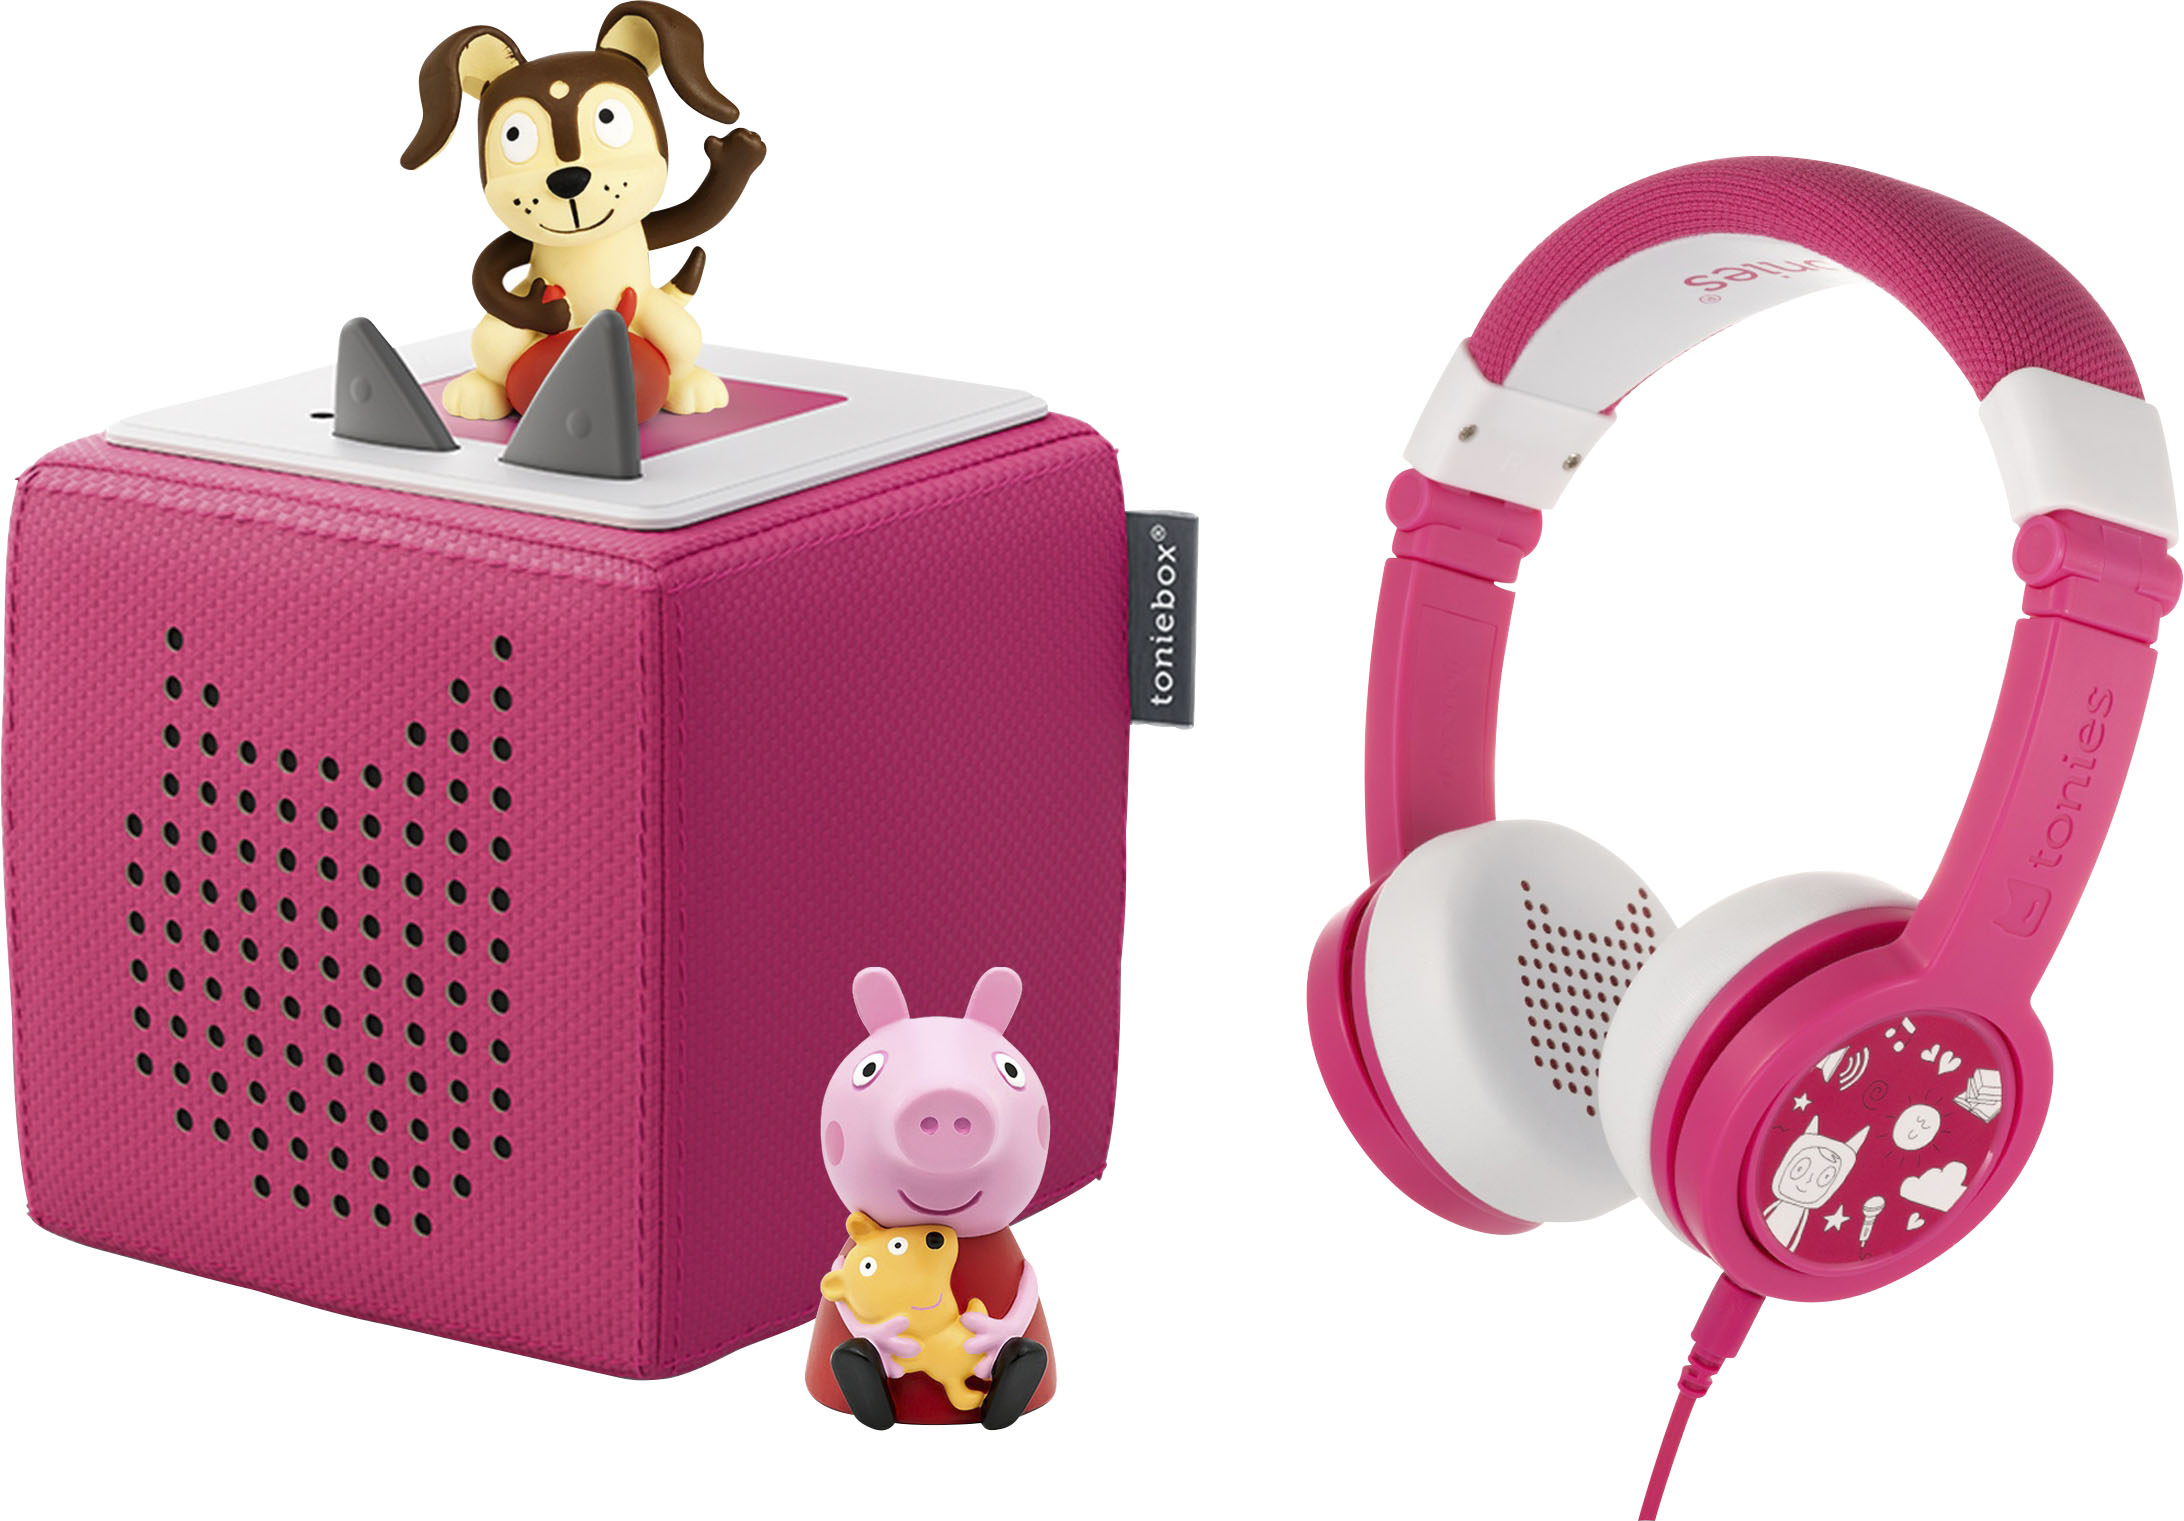 Tonies Disney Lion King Tonie Audio Play Figurine 10000498 - Best Buy